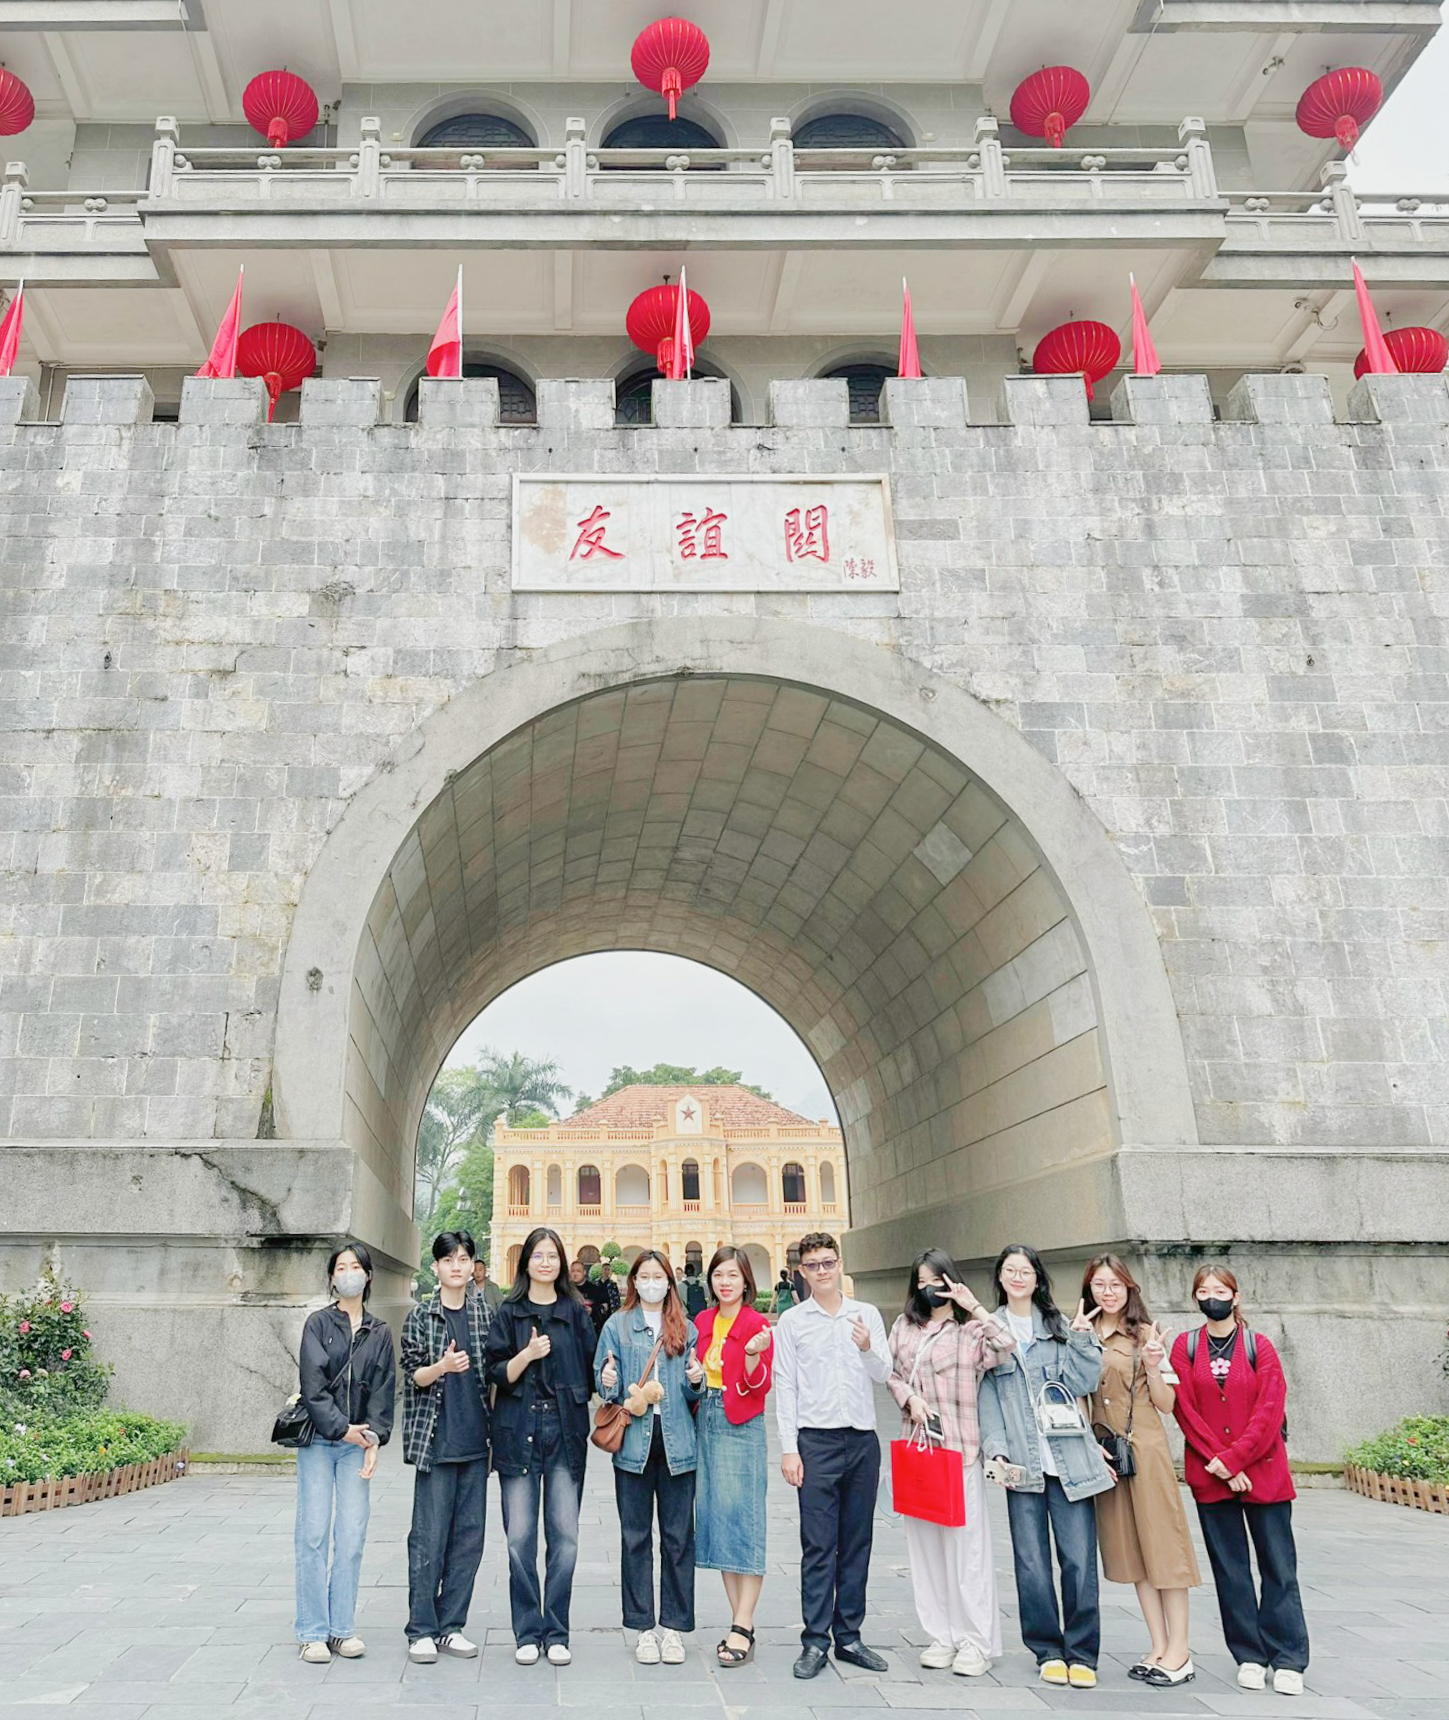 Sinh viên Trường Ngoại ngữ - Du lịch tham gia chương trình “Giao lưu biểu diễn nghệ thuật dân tộc quốc tế” tại Quảng Tây, Trung Quốc